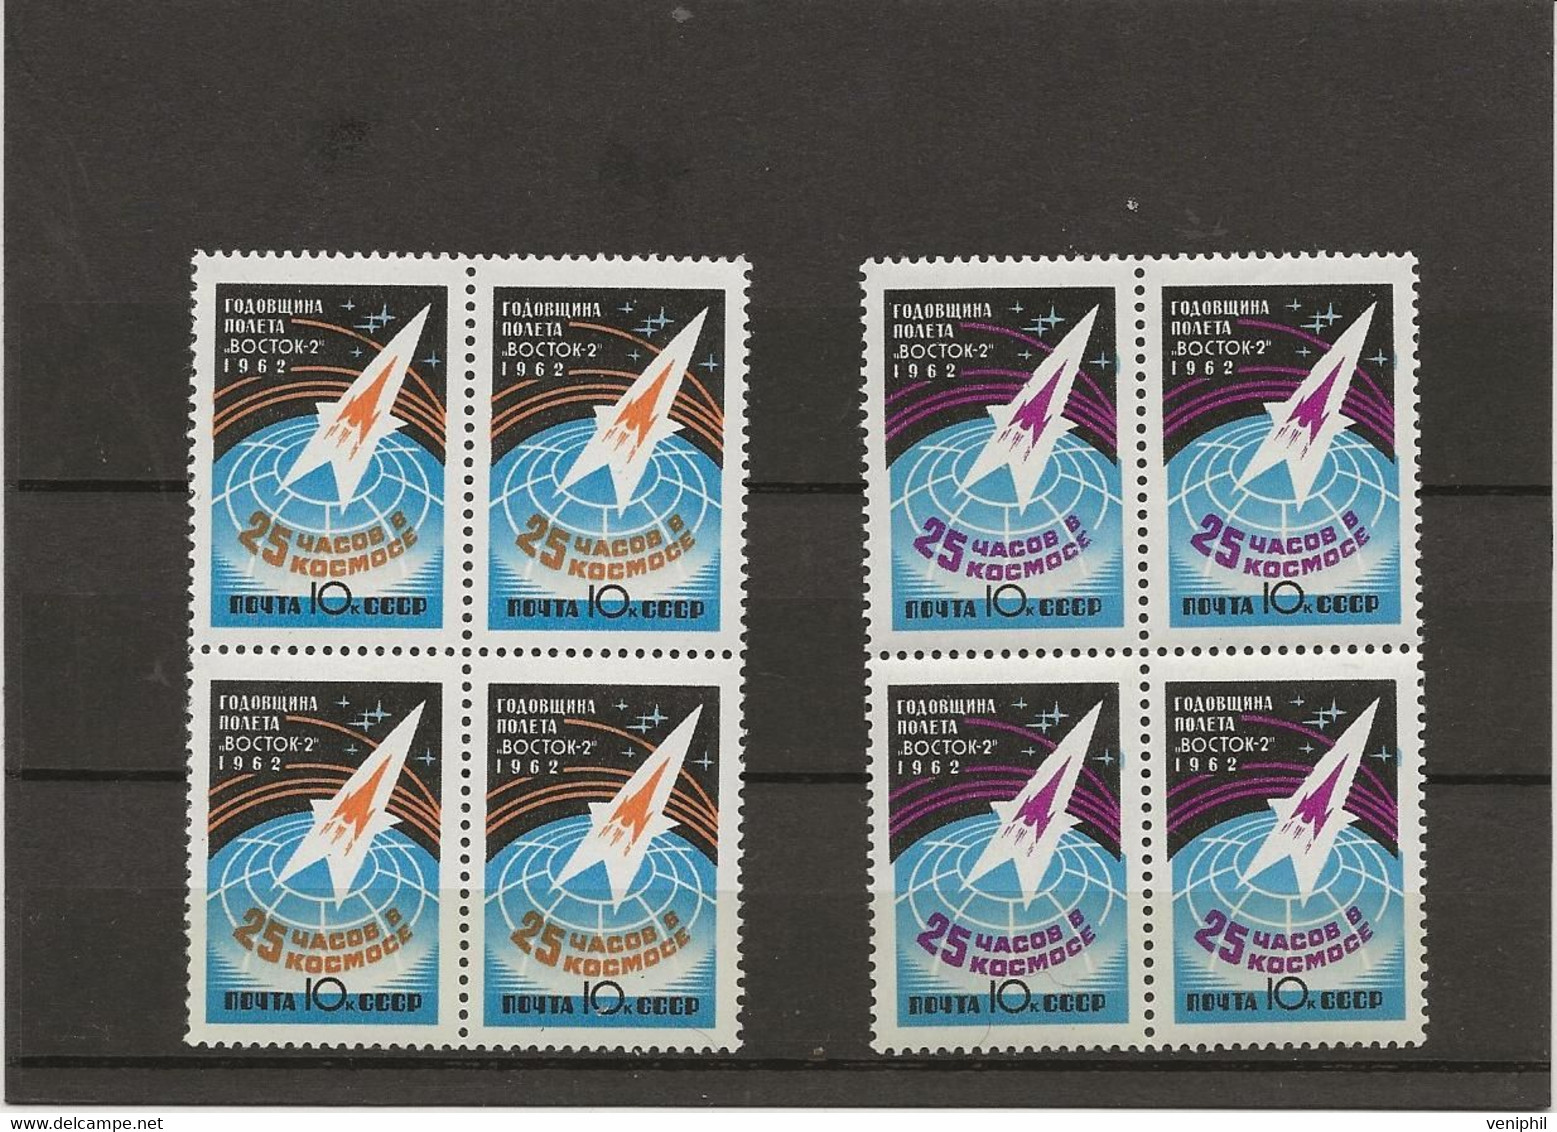 RUSSIE - SERIE COSMOS N° 2545 Et 2546- BLOC DE 4 NEUF SANS CHARNIERE  -ANNEE 1962 - Unused Stamps